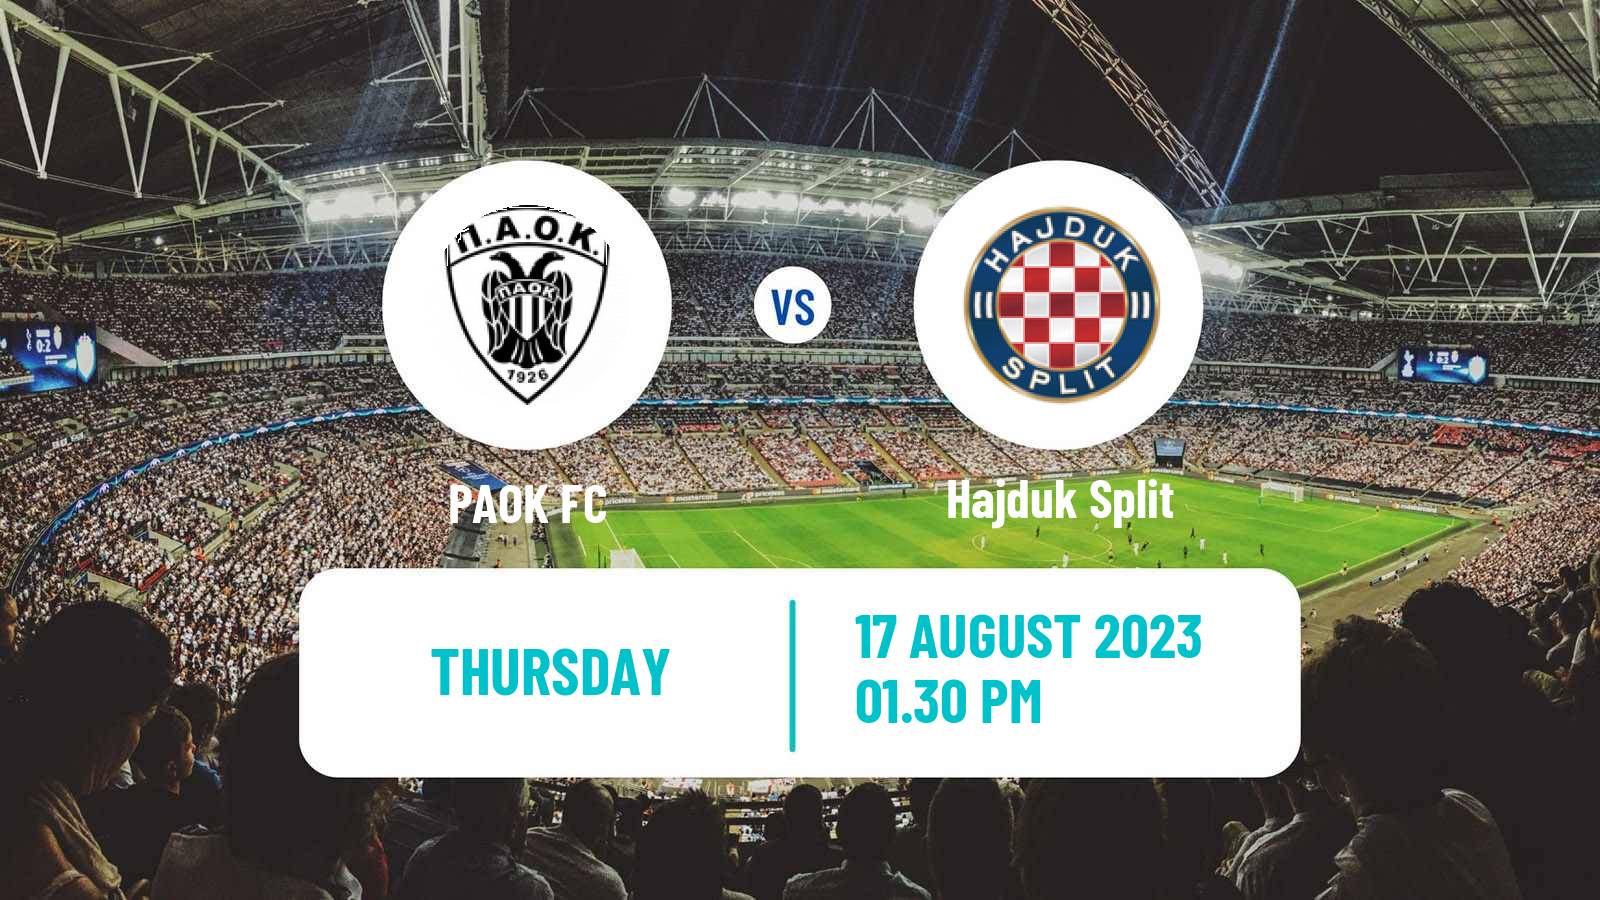 Dinamo Zagreb vs Hajduk Split - live score, predicted lineups and